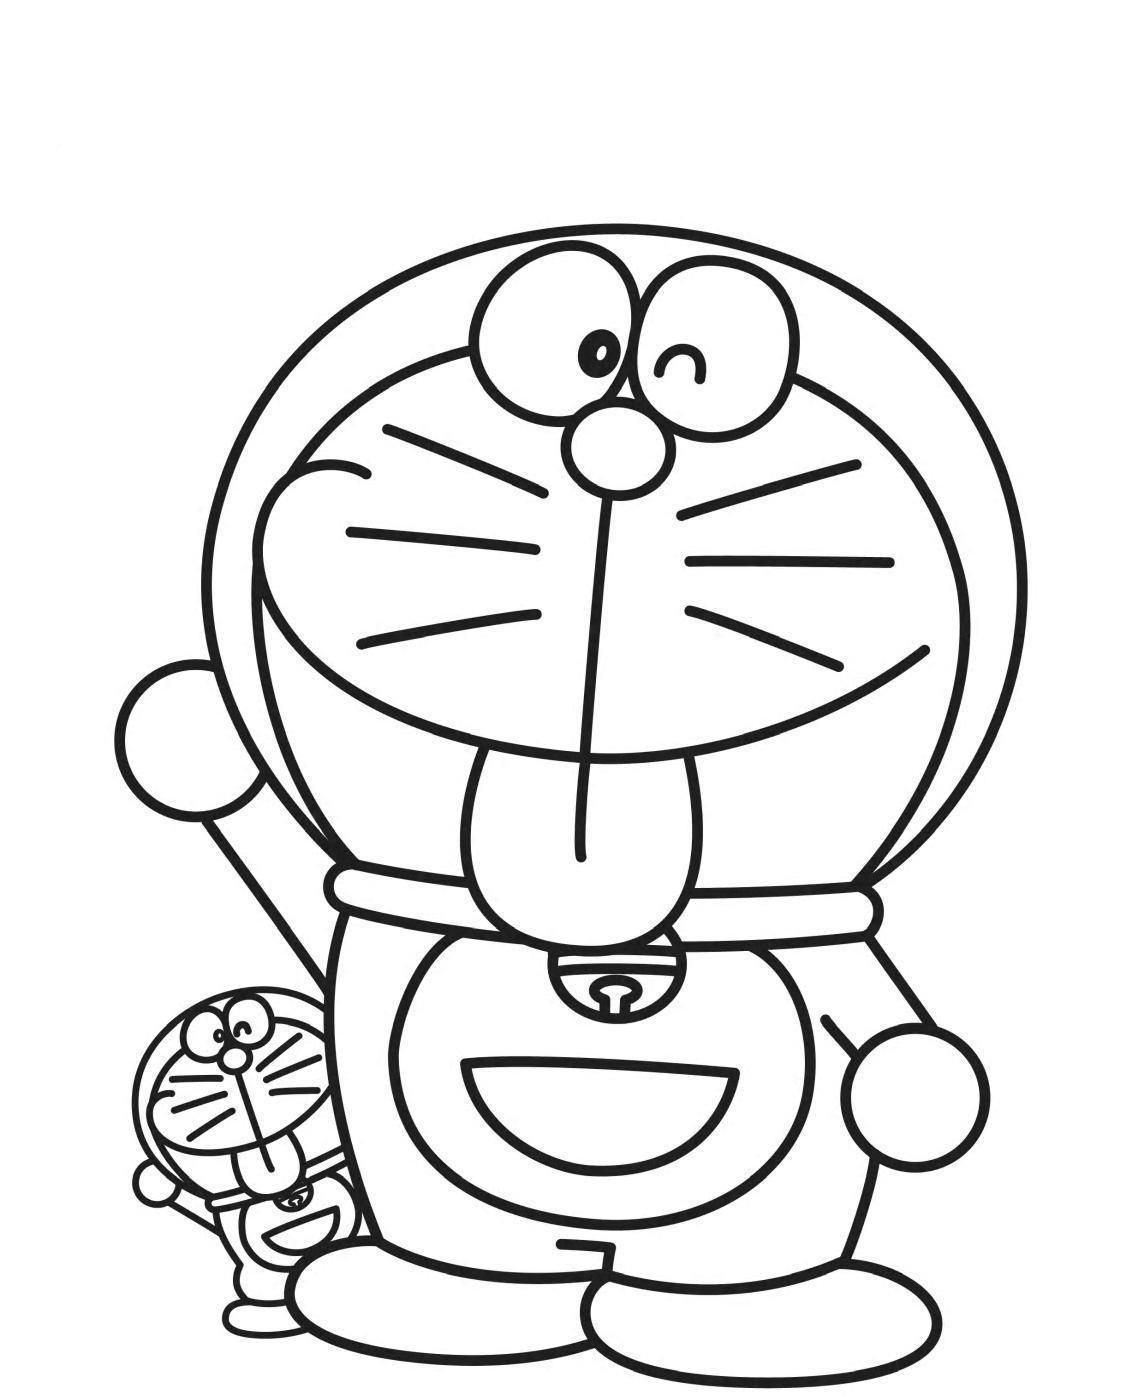 Tranh tô màu Doraemon dễ thương và đẹp mắt